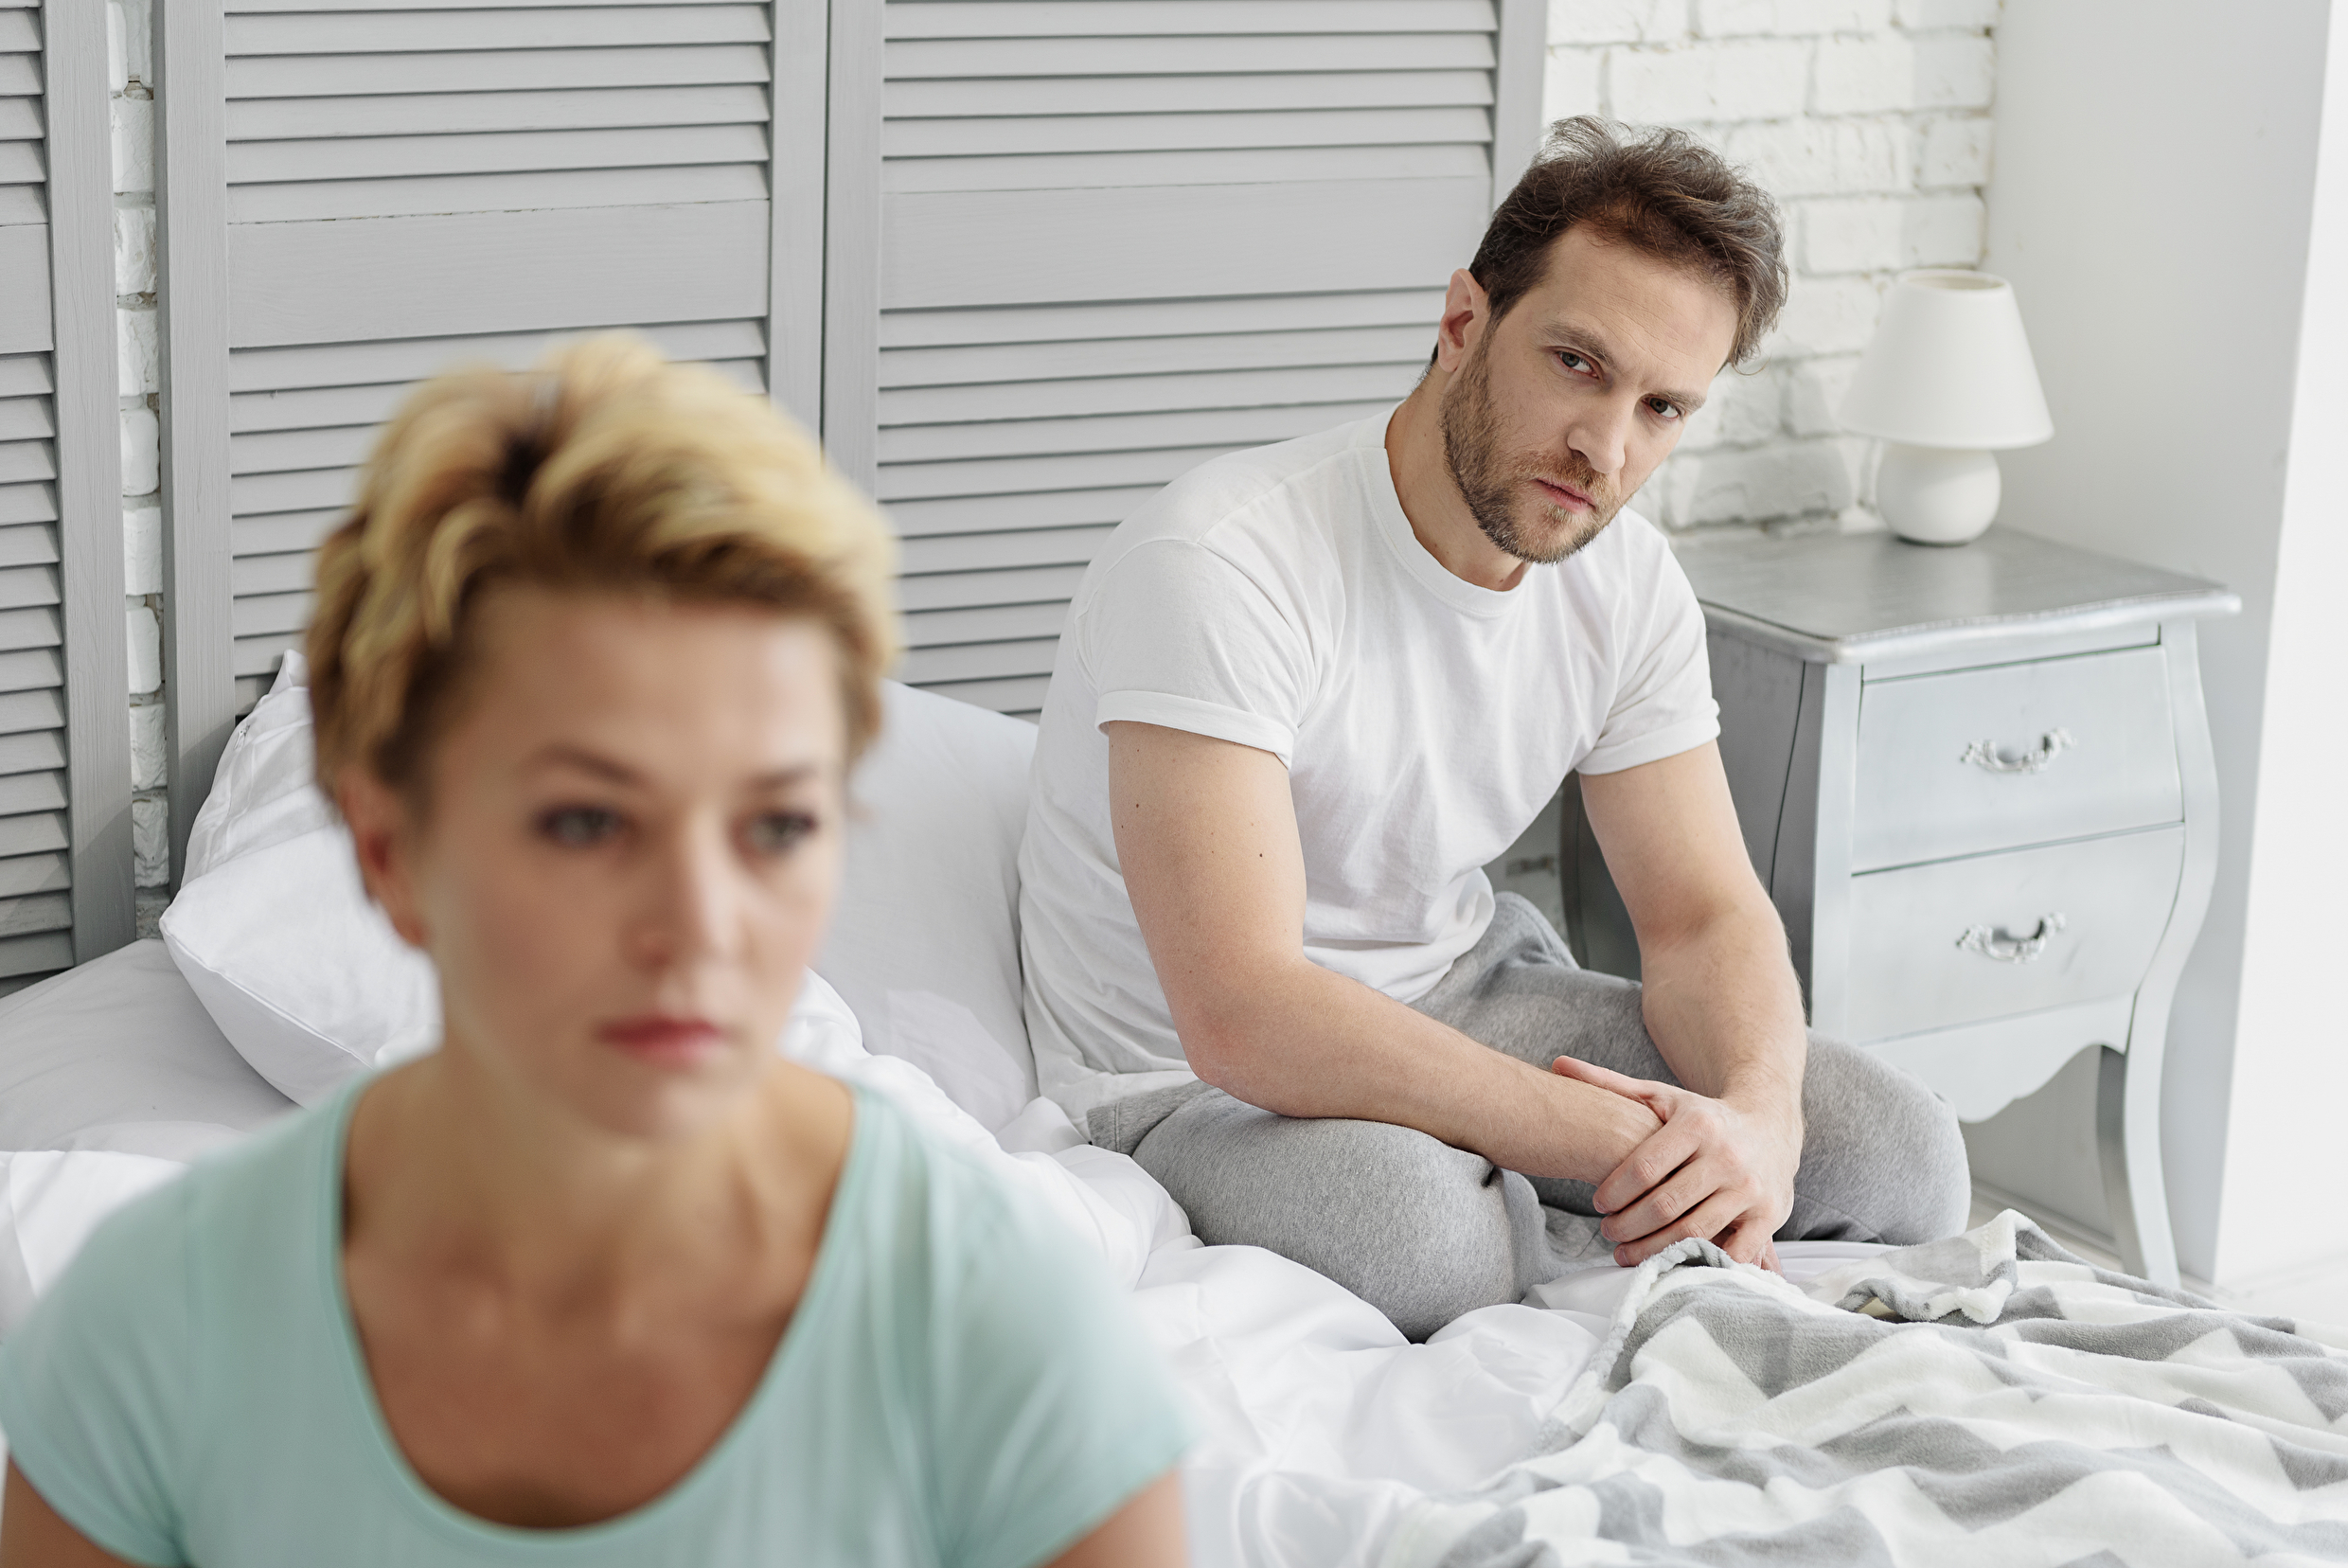 Min kone tager aldrig initiativ til sex Ude og Hjemme